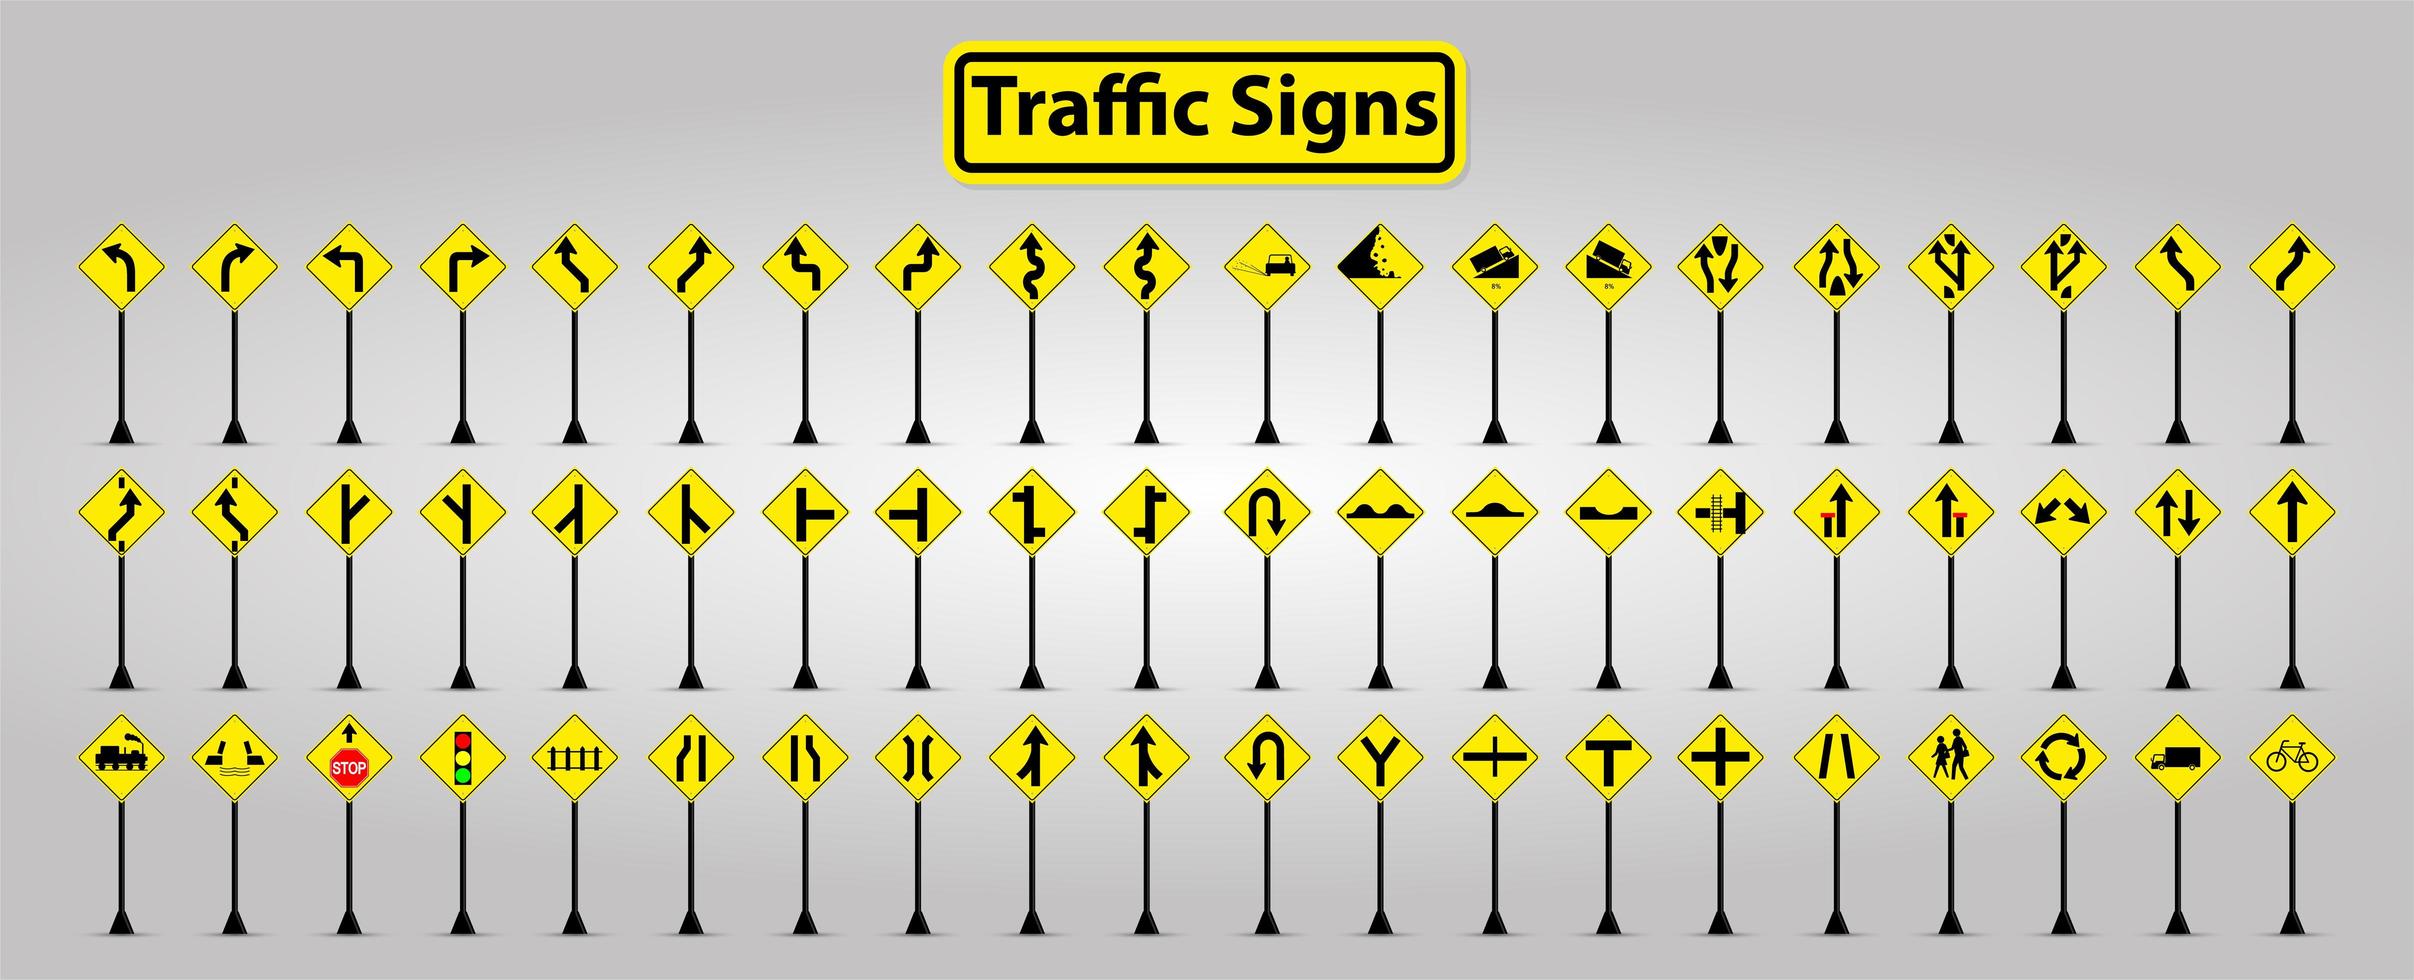 sinais de trânsito de símbolo amarelo e preto no conjunto de postagens vetor